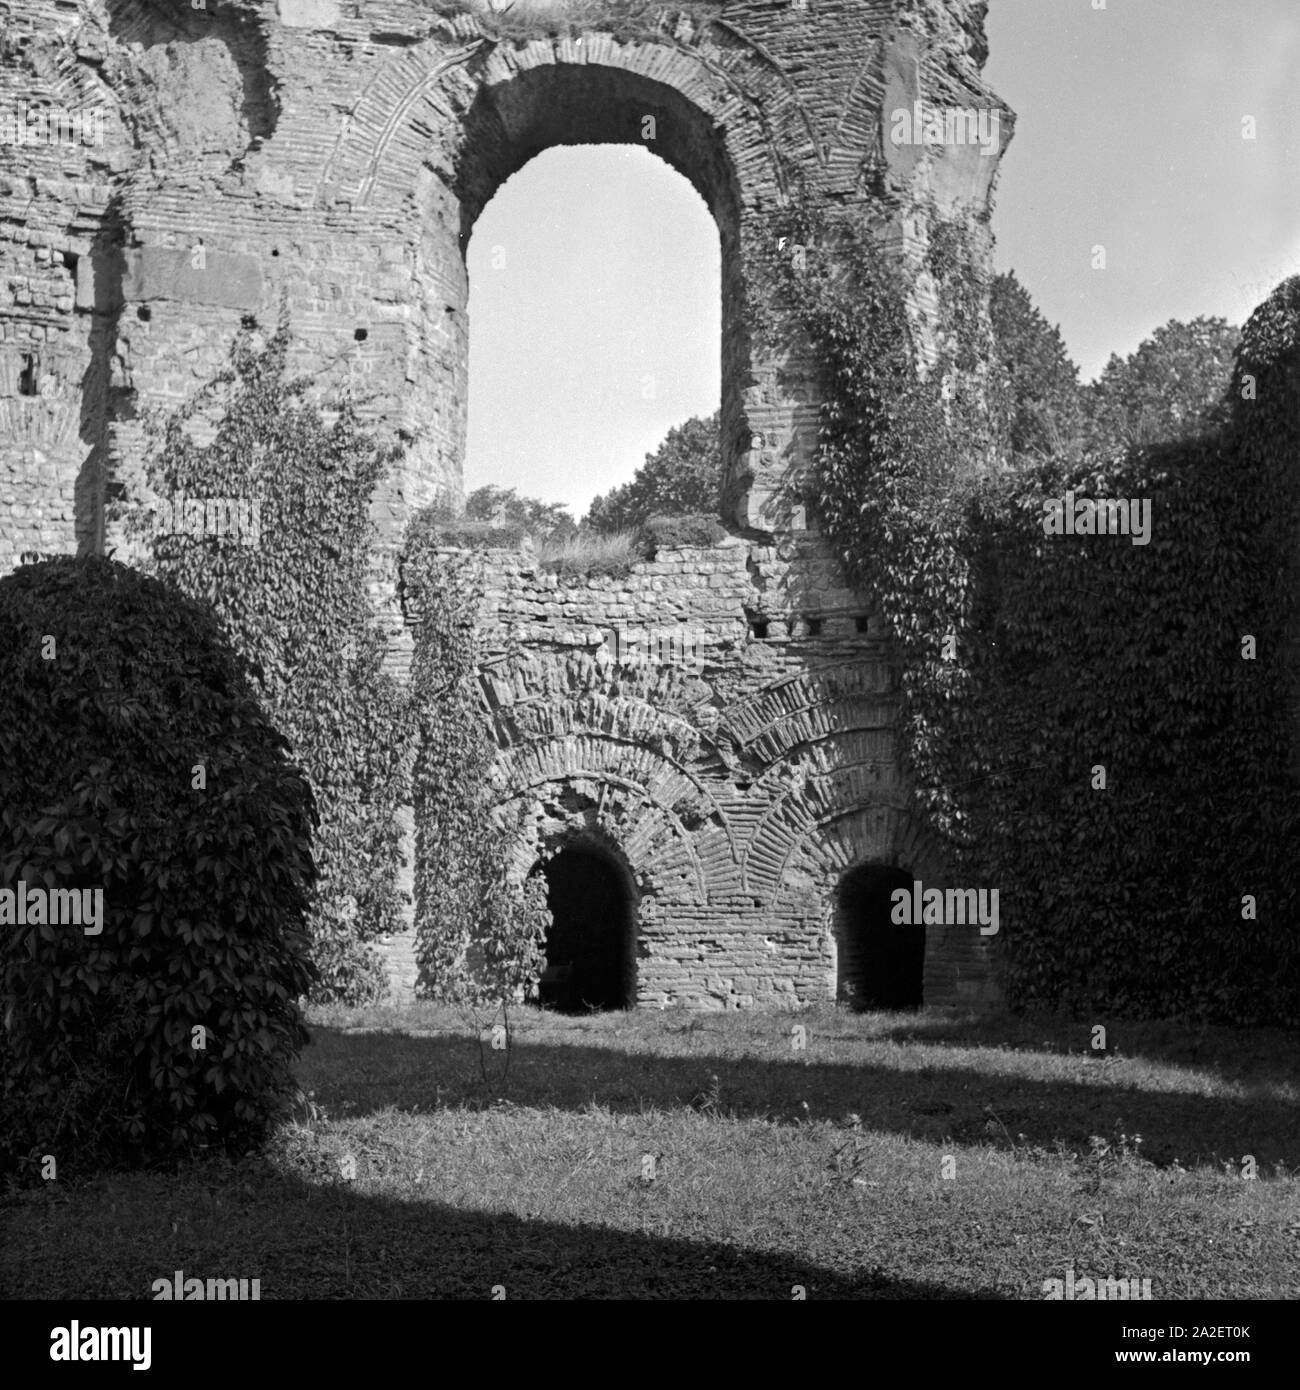 Überreste des römischen Amphitheaters in Trier, Deutschland 1930er Jahre. Remains of the Roman amphitheater at Trier, Germany 1930s. Stock Photo